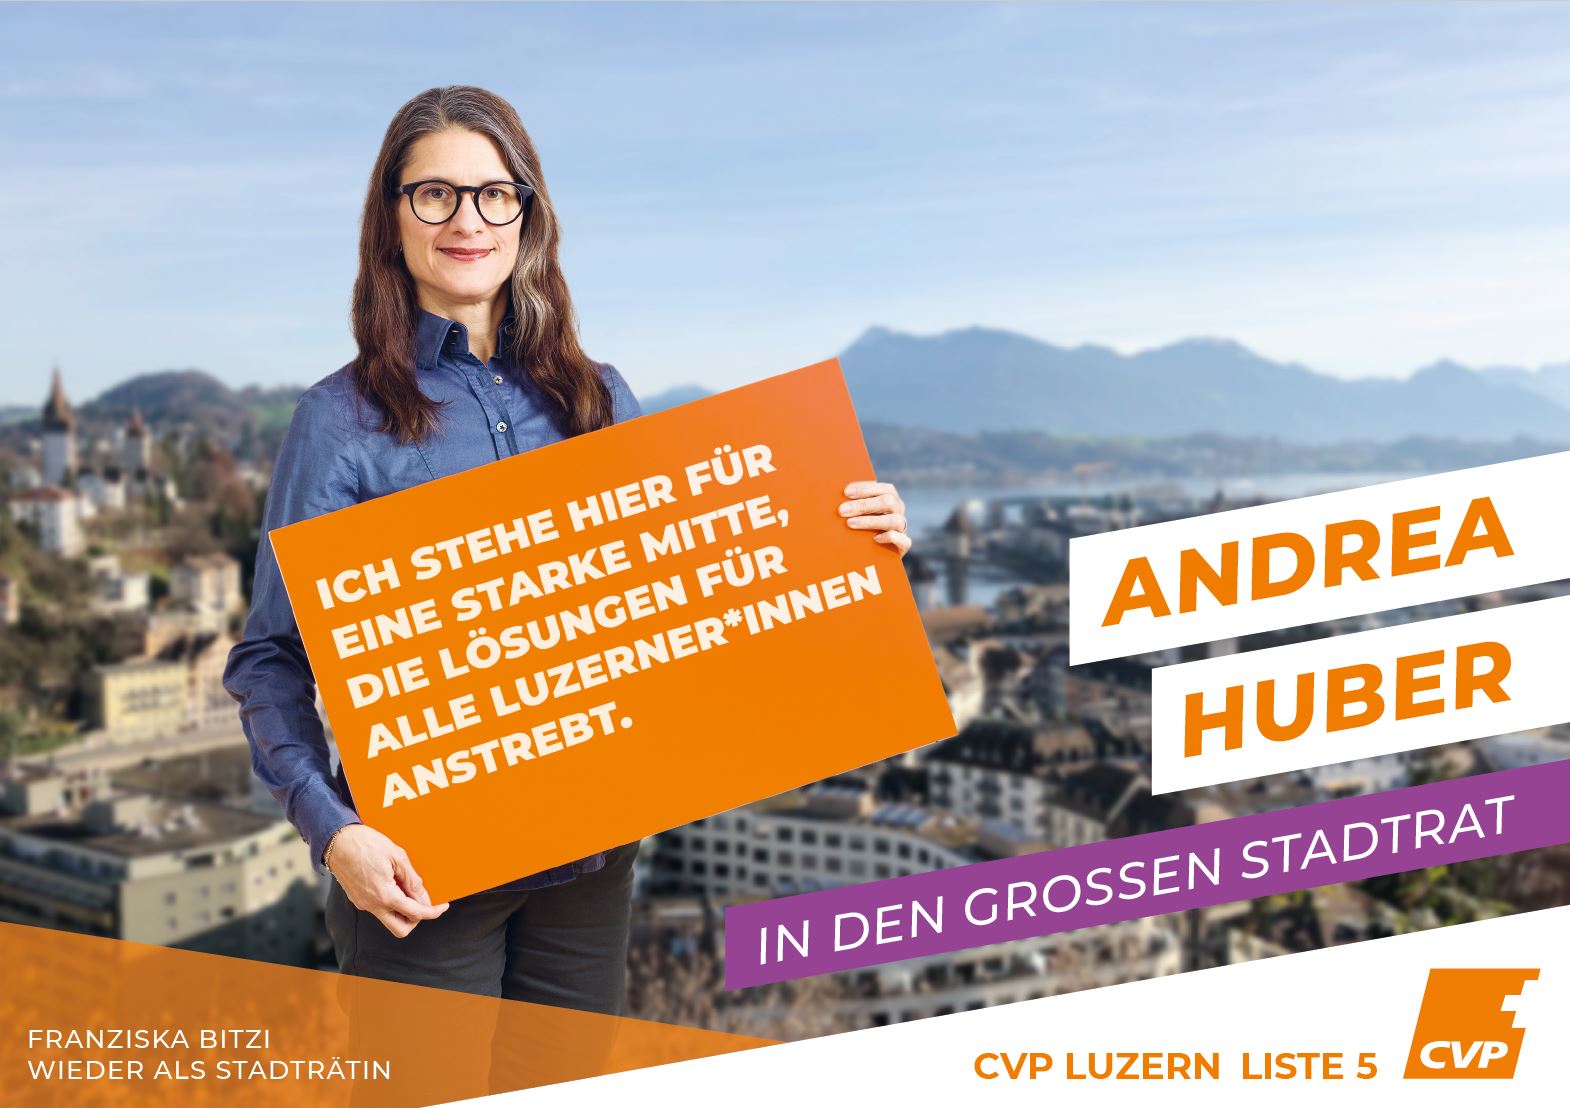 Andrea Huber Graber Kandidatin Grossstadtrat Luzern «Für eine starke Mitte, die Lösungen für alle Luzerner*innen anstrebt»